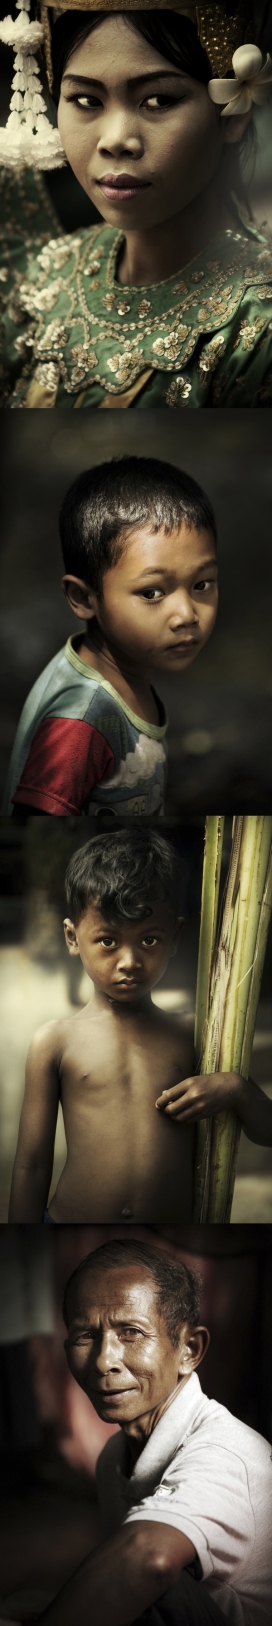 柬埔寨居民人像新闻纪实作品-摄影师通过镜头捕捉微笑、眨眼等细节揭示真正的亲密本质-DIEGO ARROYO踏遍世界各地旅行拍摄，寻找微妙的记录